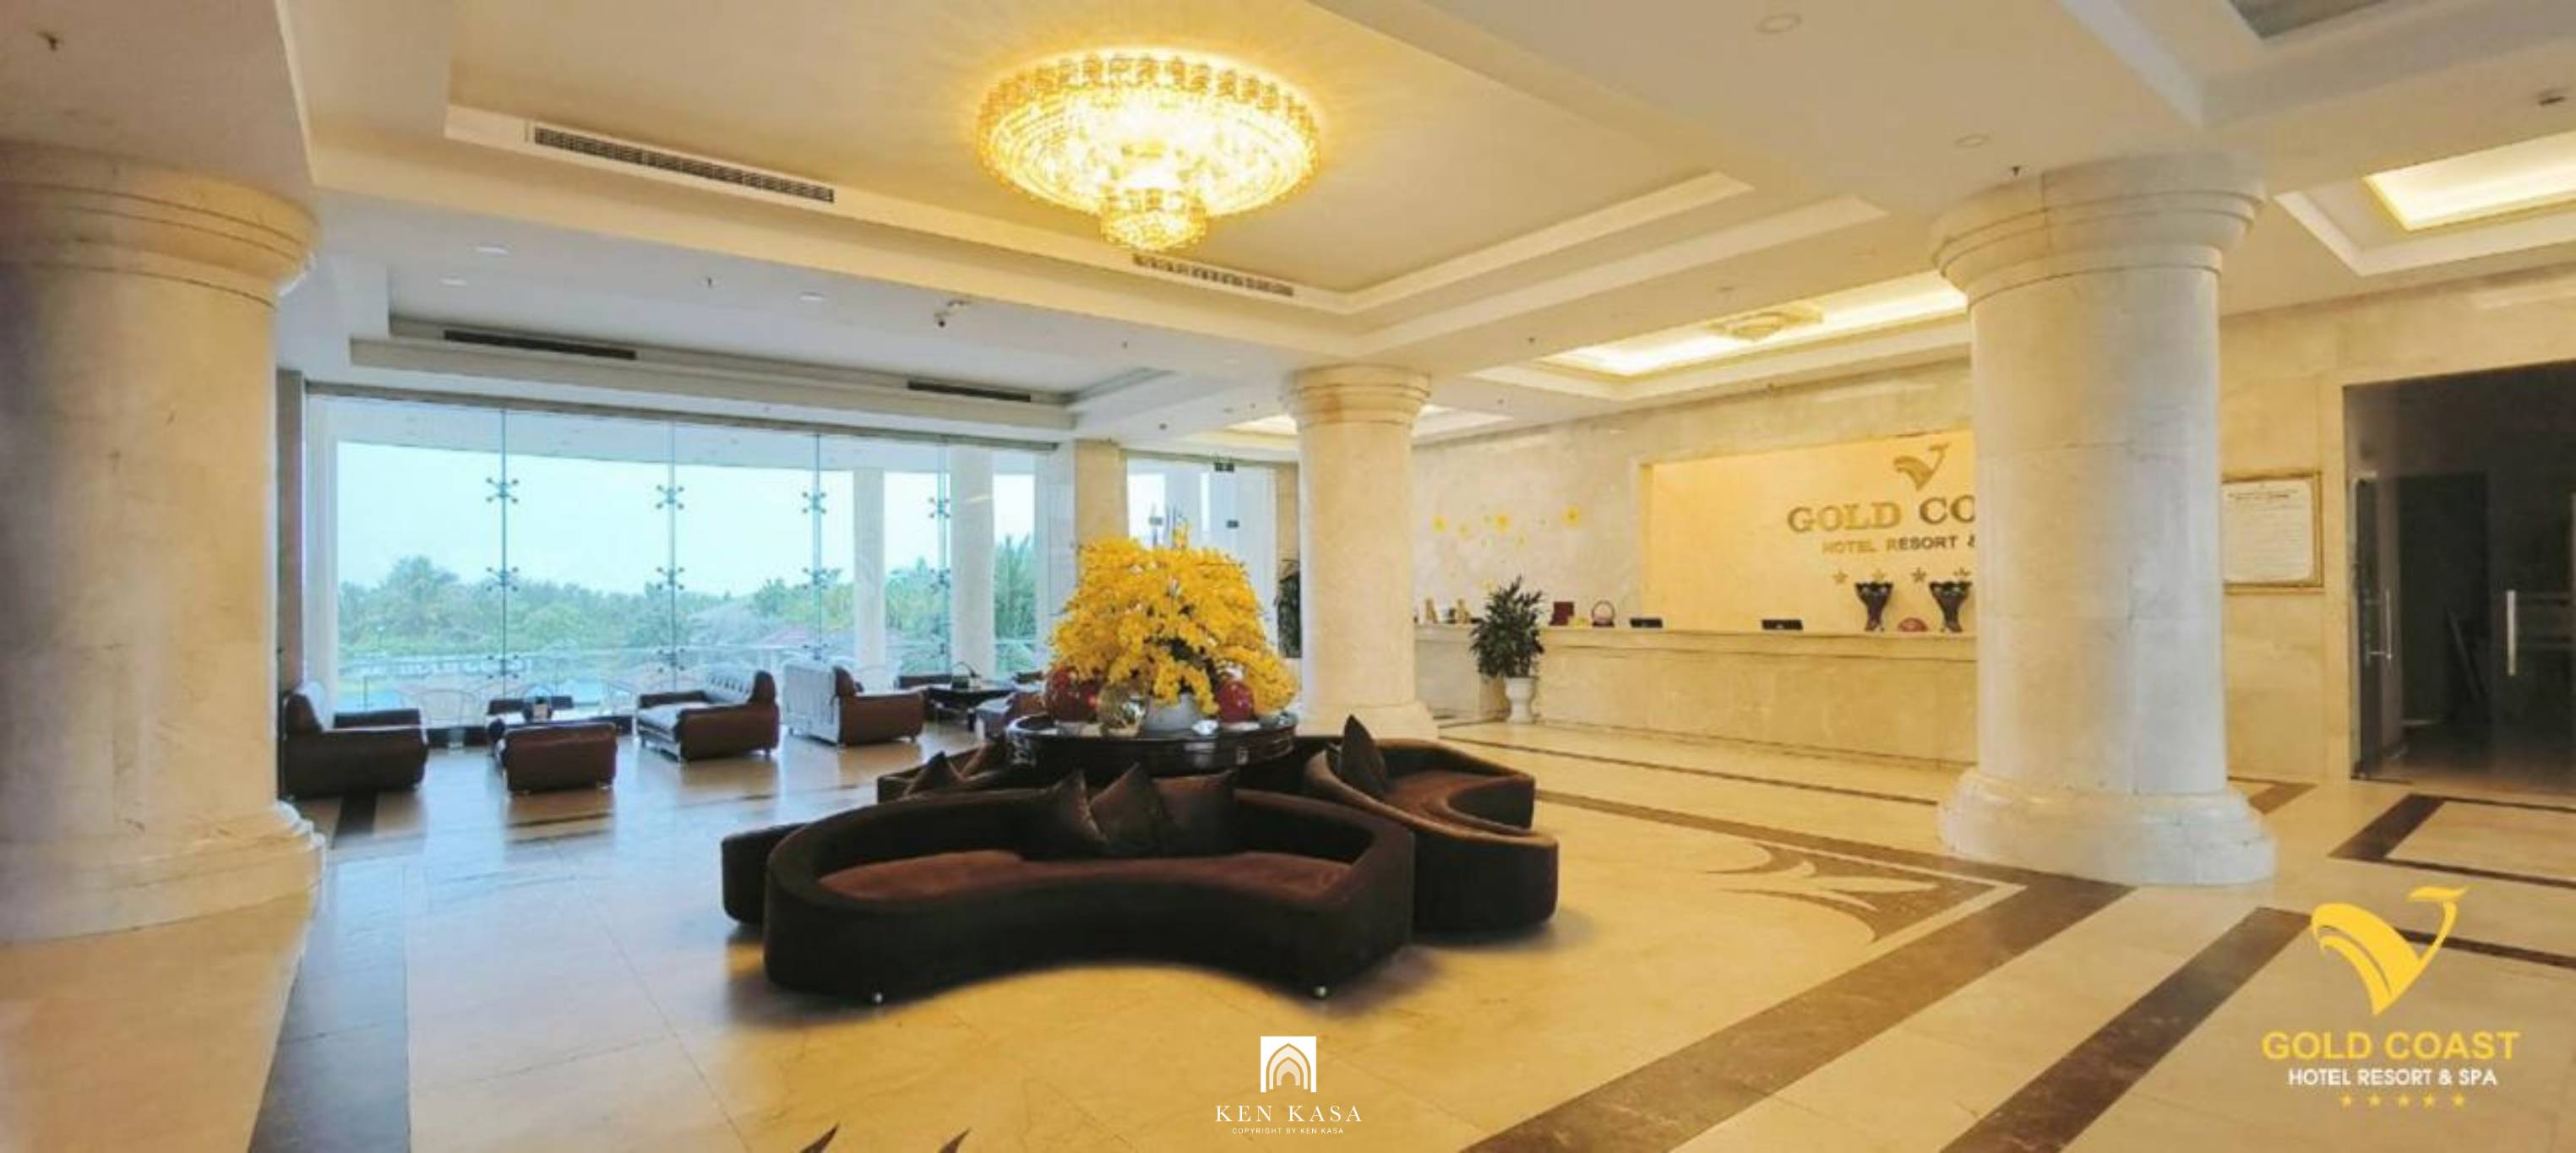 Phong cách thiết kế tại Gold Coast Hotel Resort & Spa